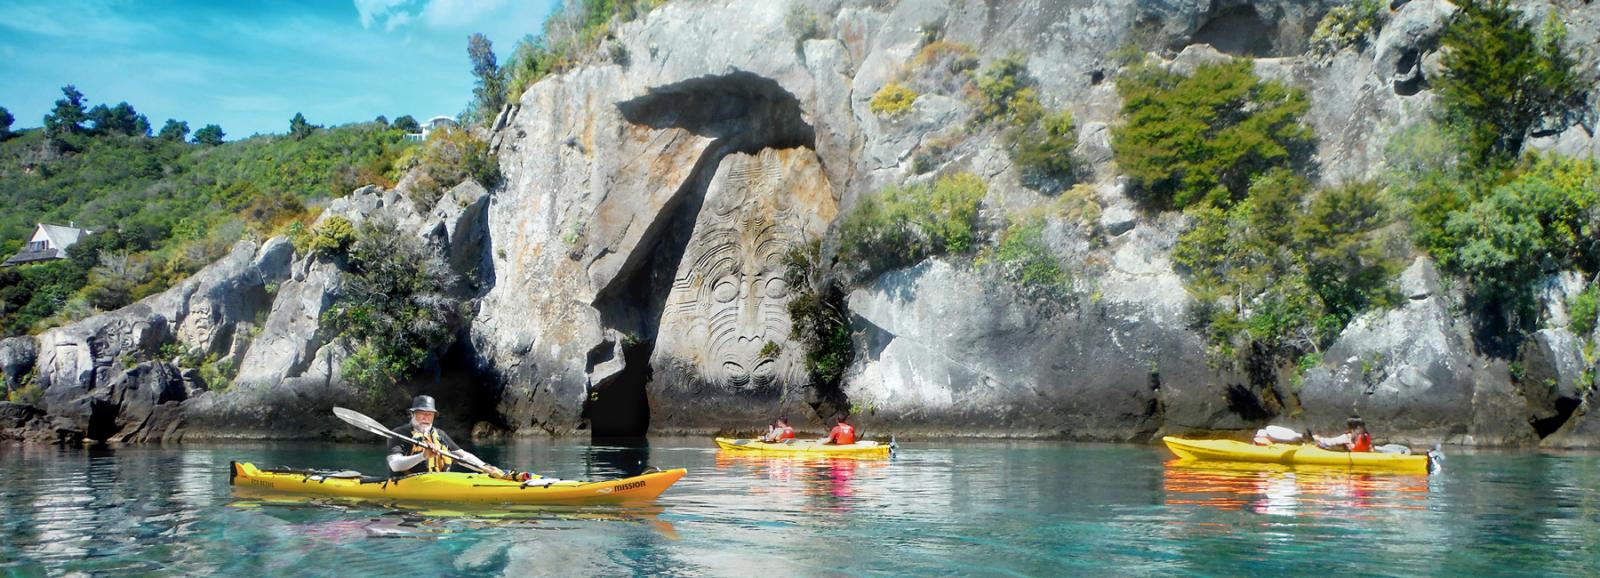 Kayaking Tours to rock Carving Taupo